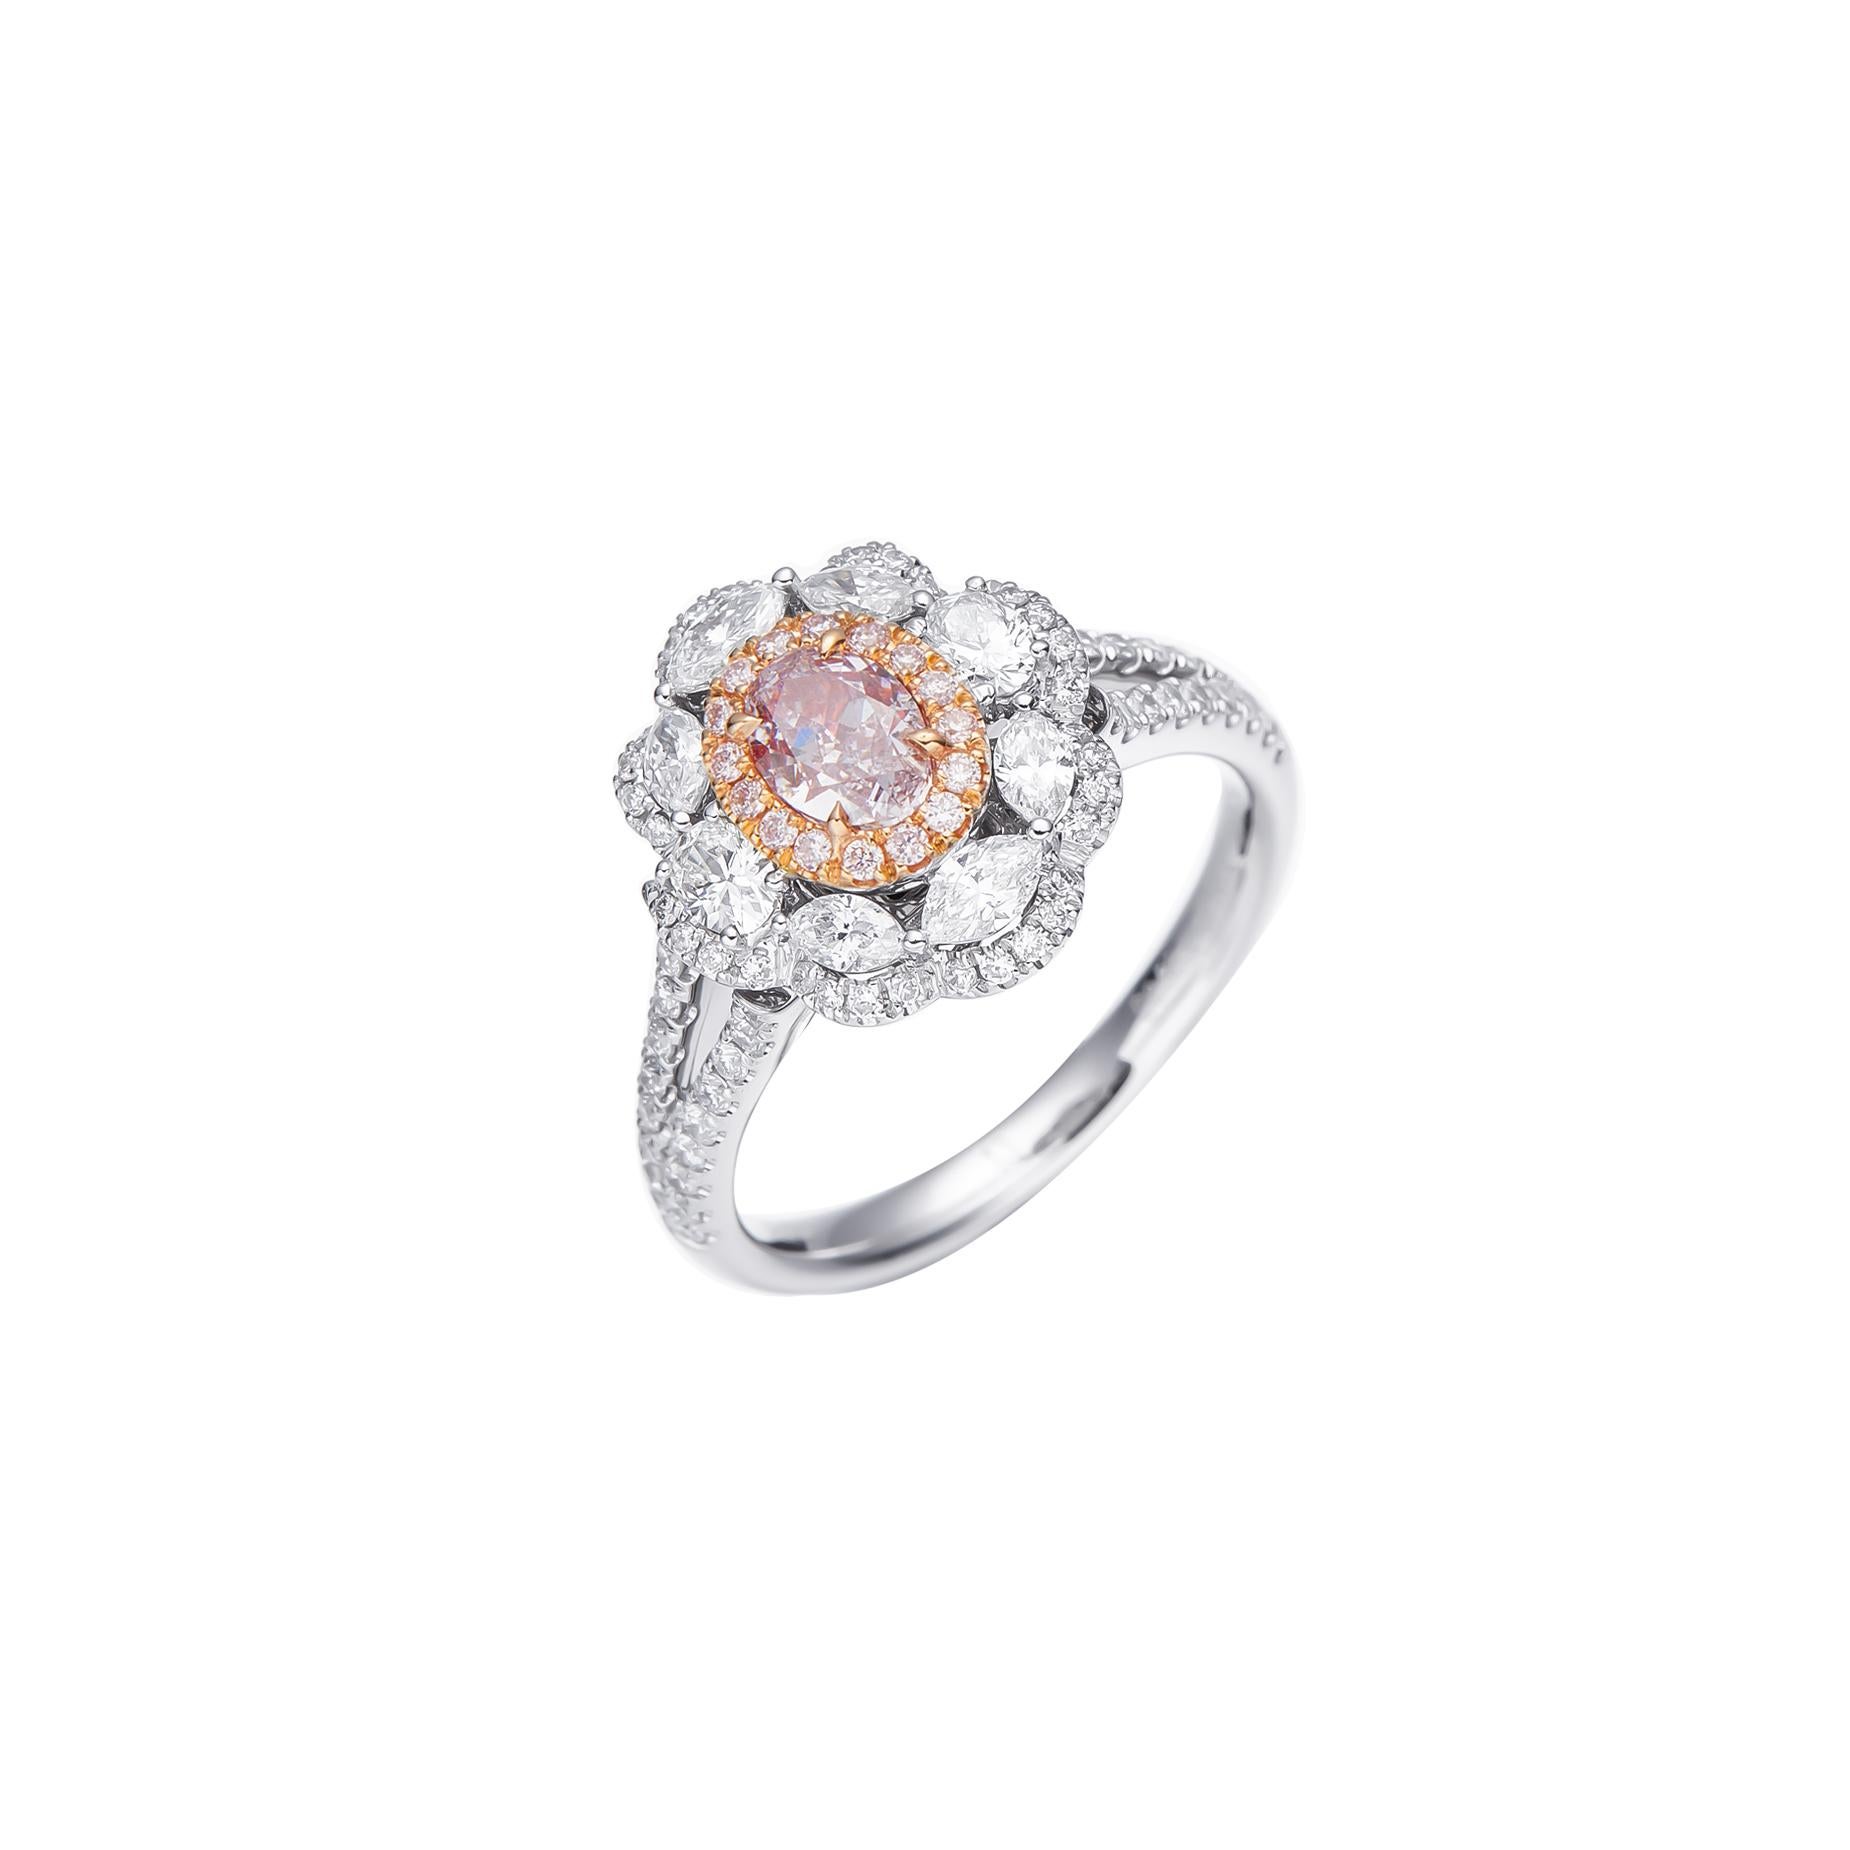 Gönnen Sie sich eine Welt voller Eleganz und Verführung mit einer atemberaubenden Kreation, die über Schönheit hinausgeht - dem GIA-zertifizierten 0,50 Karat Light Pink Oval Shape Natural Fancy Diamond Solitaire Ring. Dieses exquisite Stück,